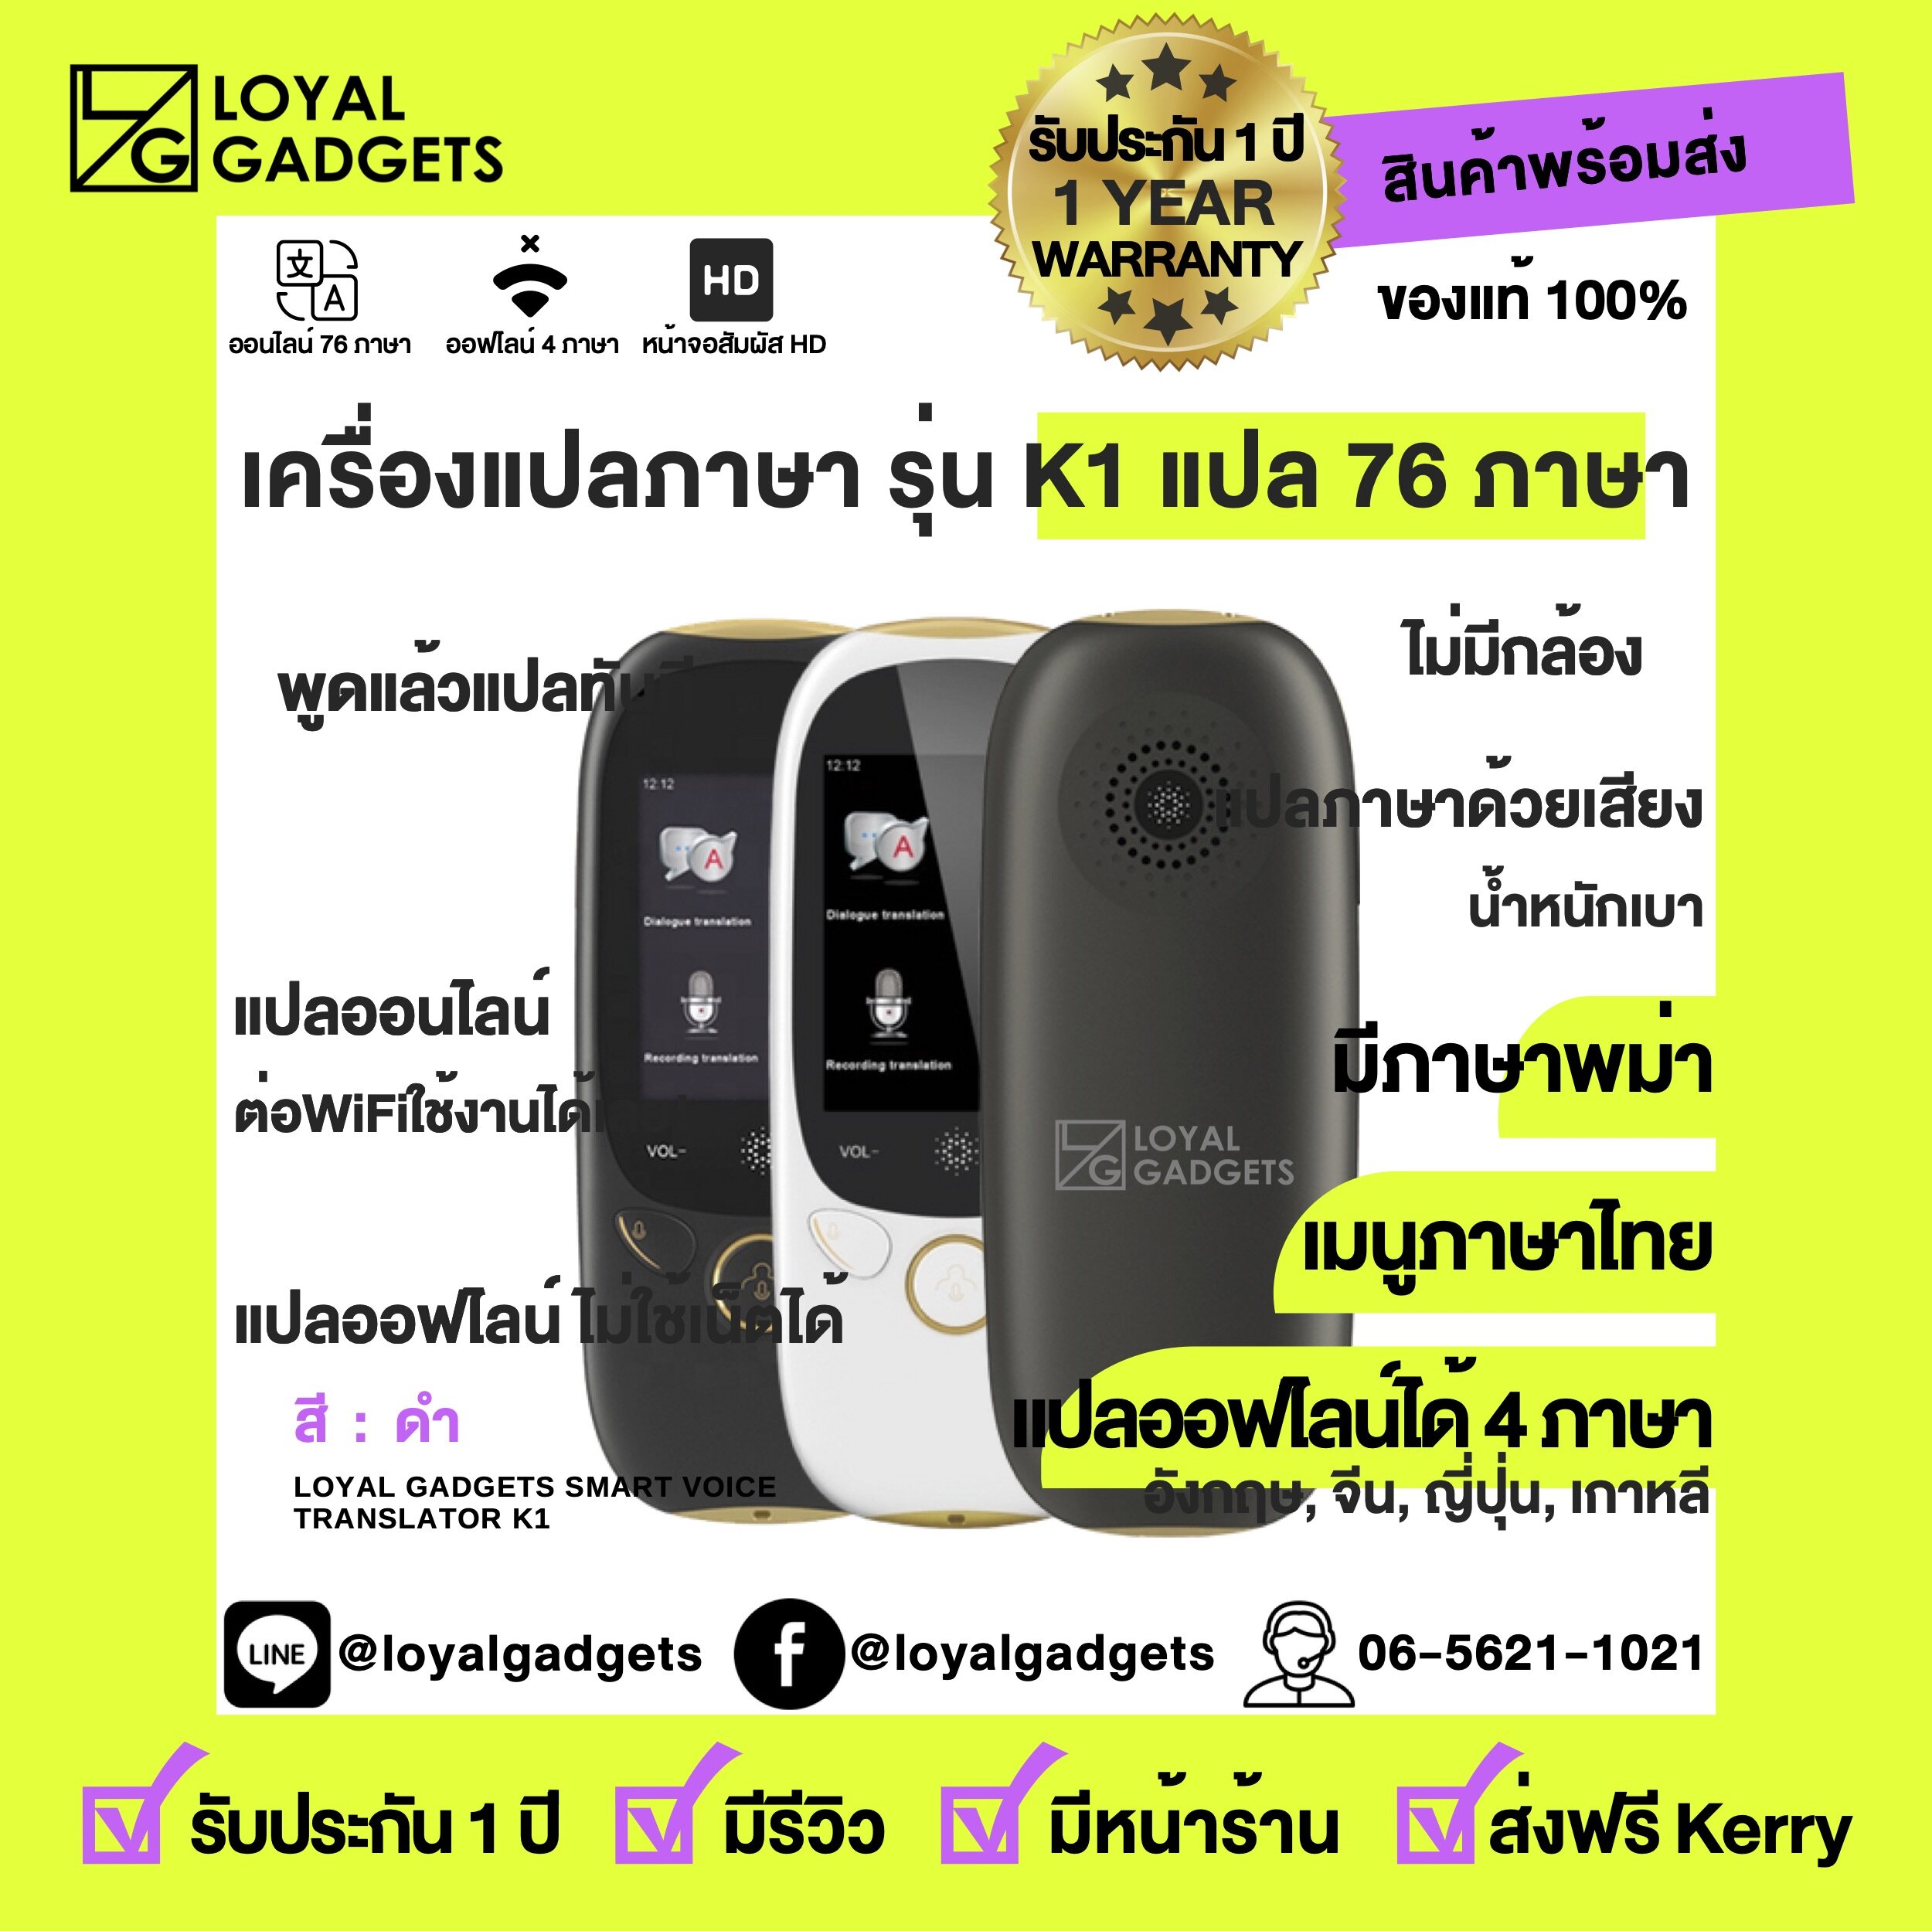 Loyal Gadgets K1 เครื่องแปลภาษา 75 ภาษา แปลออฟไลน์ได้ 5 ภาษา ทั่วโลก พูดภาษาไทยแล้วแปลเป็นภาษาอื่นได้ทันที ขนาดพกพา แปลได้ 2 ทาง  Voice Translator